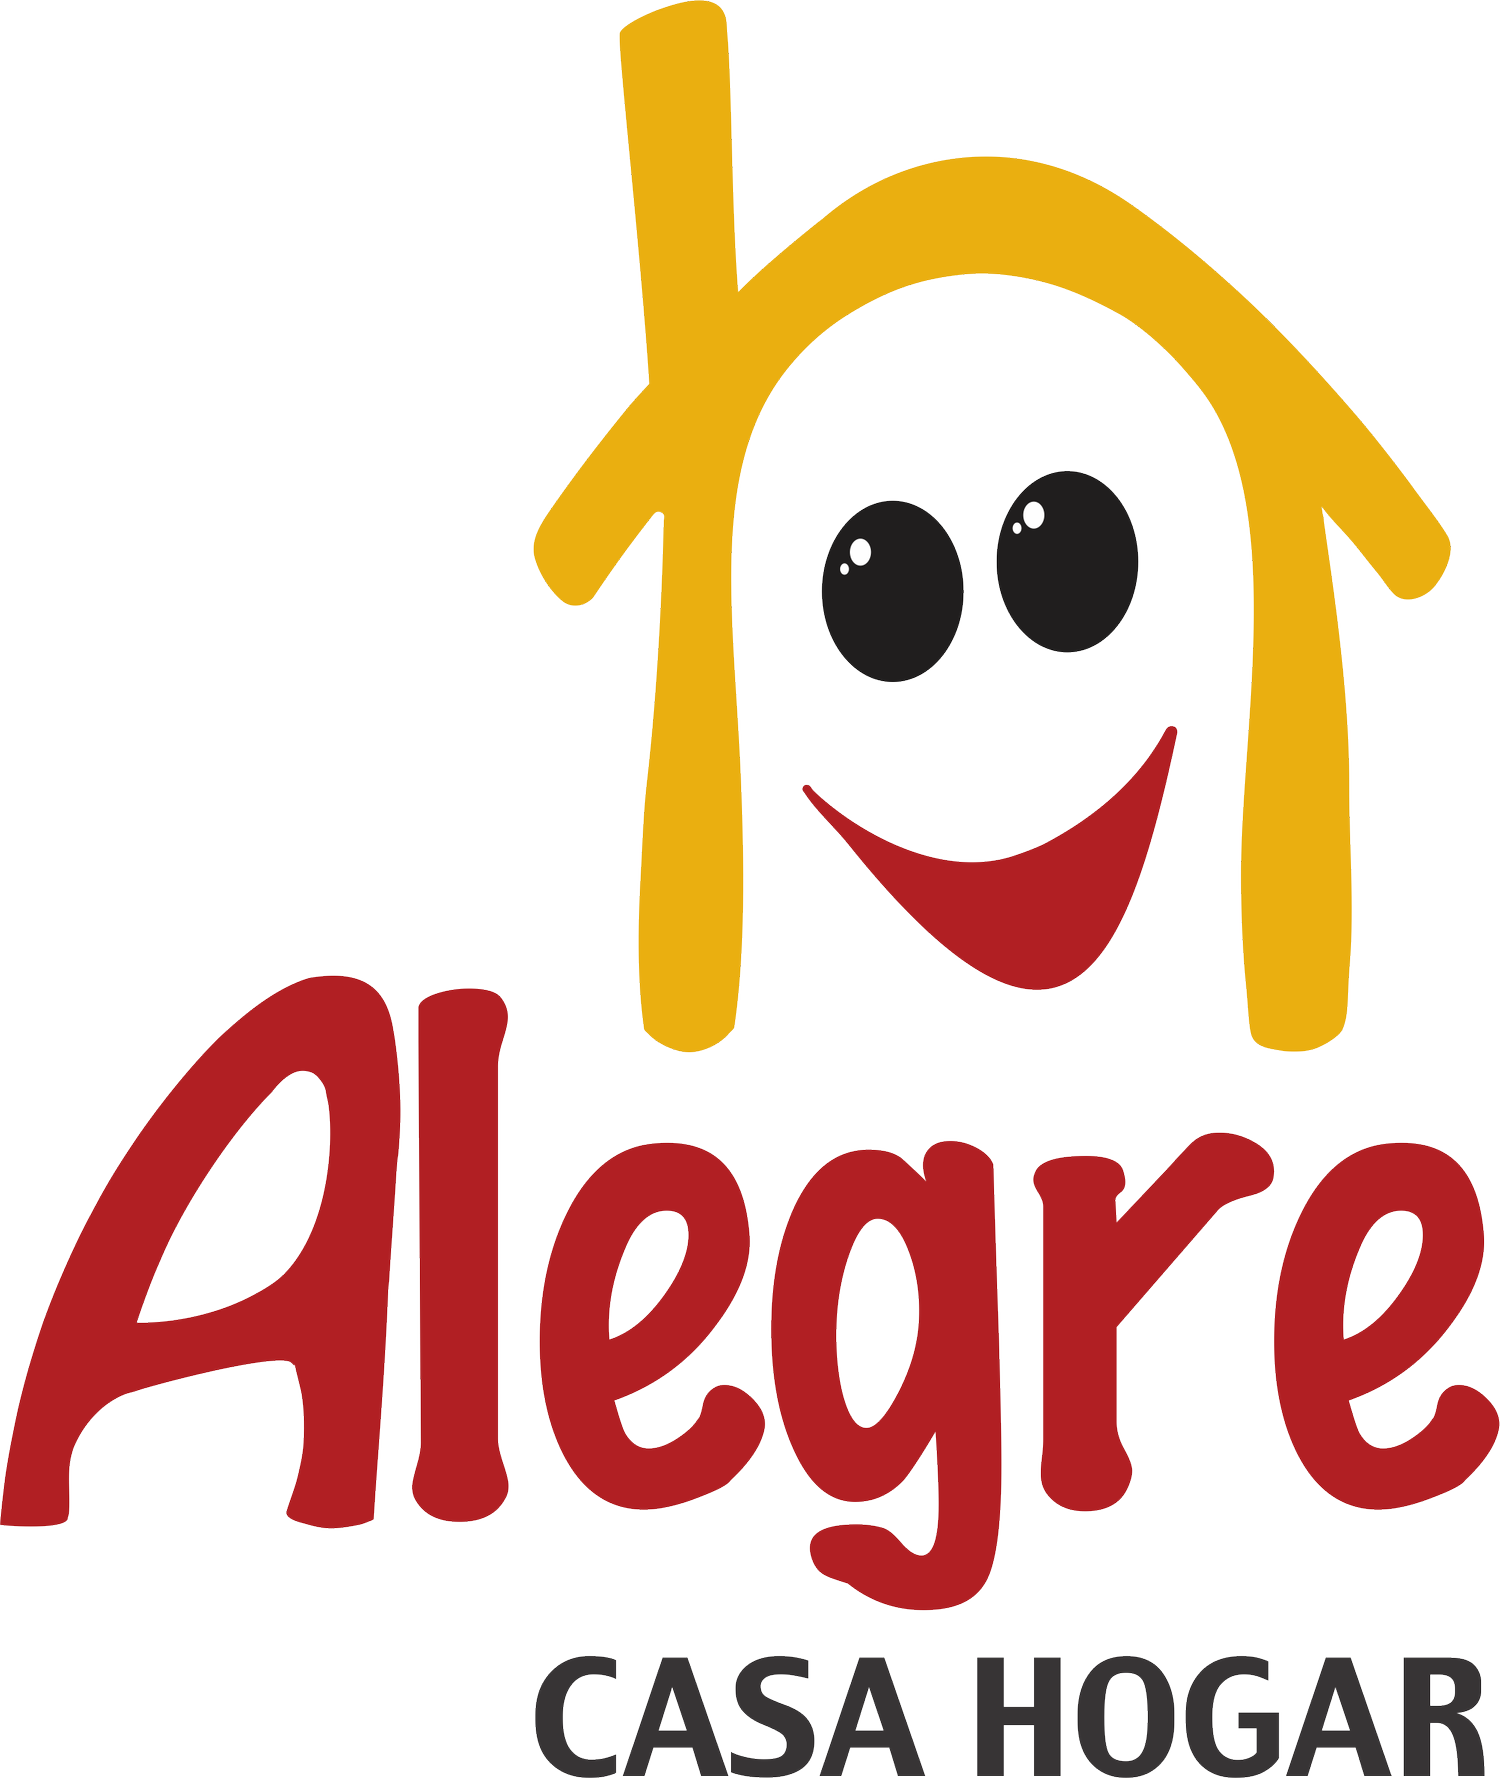 Alegre - Casa Hogar